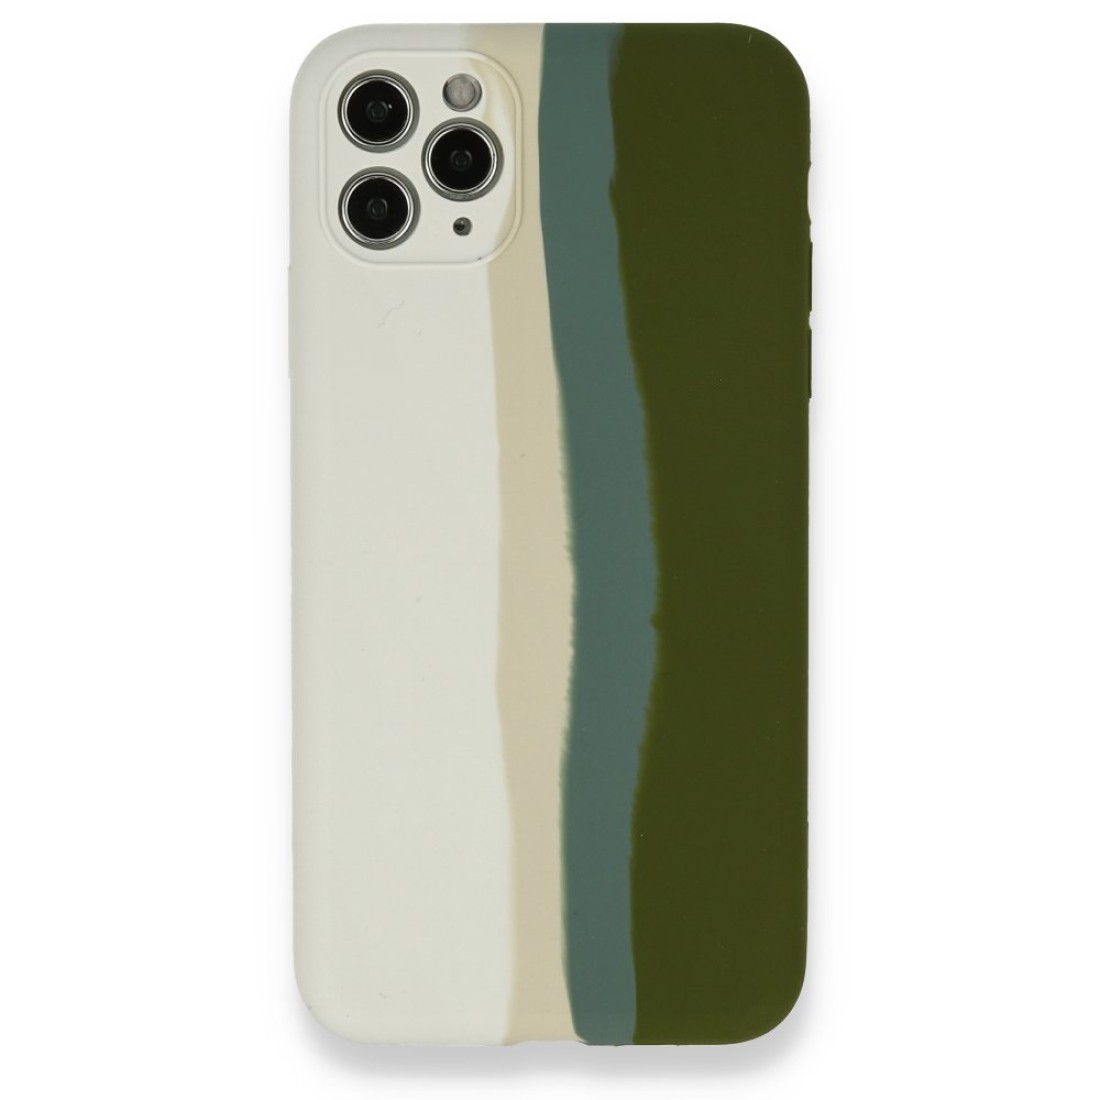 Apple iPhone 11 Pro Kılıf Ebruli Lansman Silikon - Beyaz-Yeşil